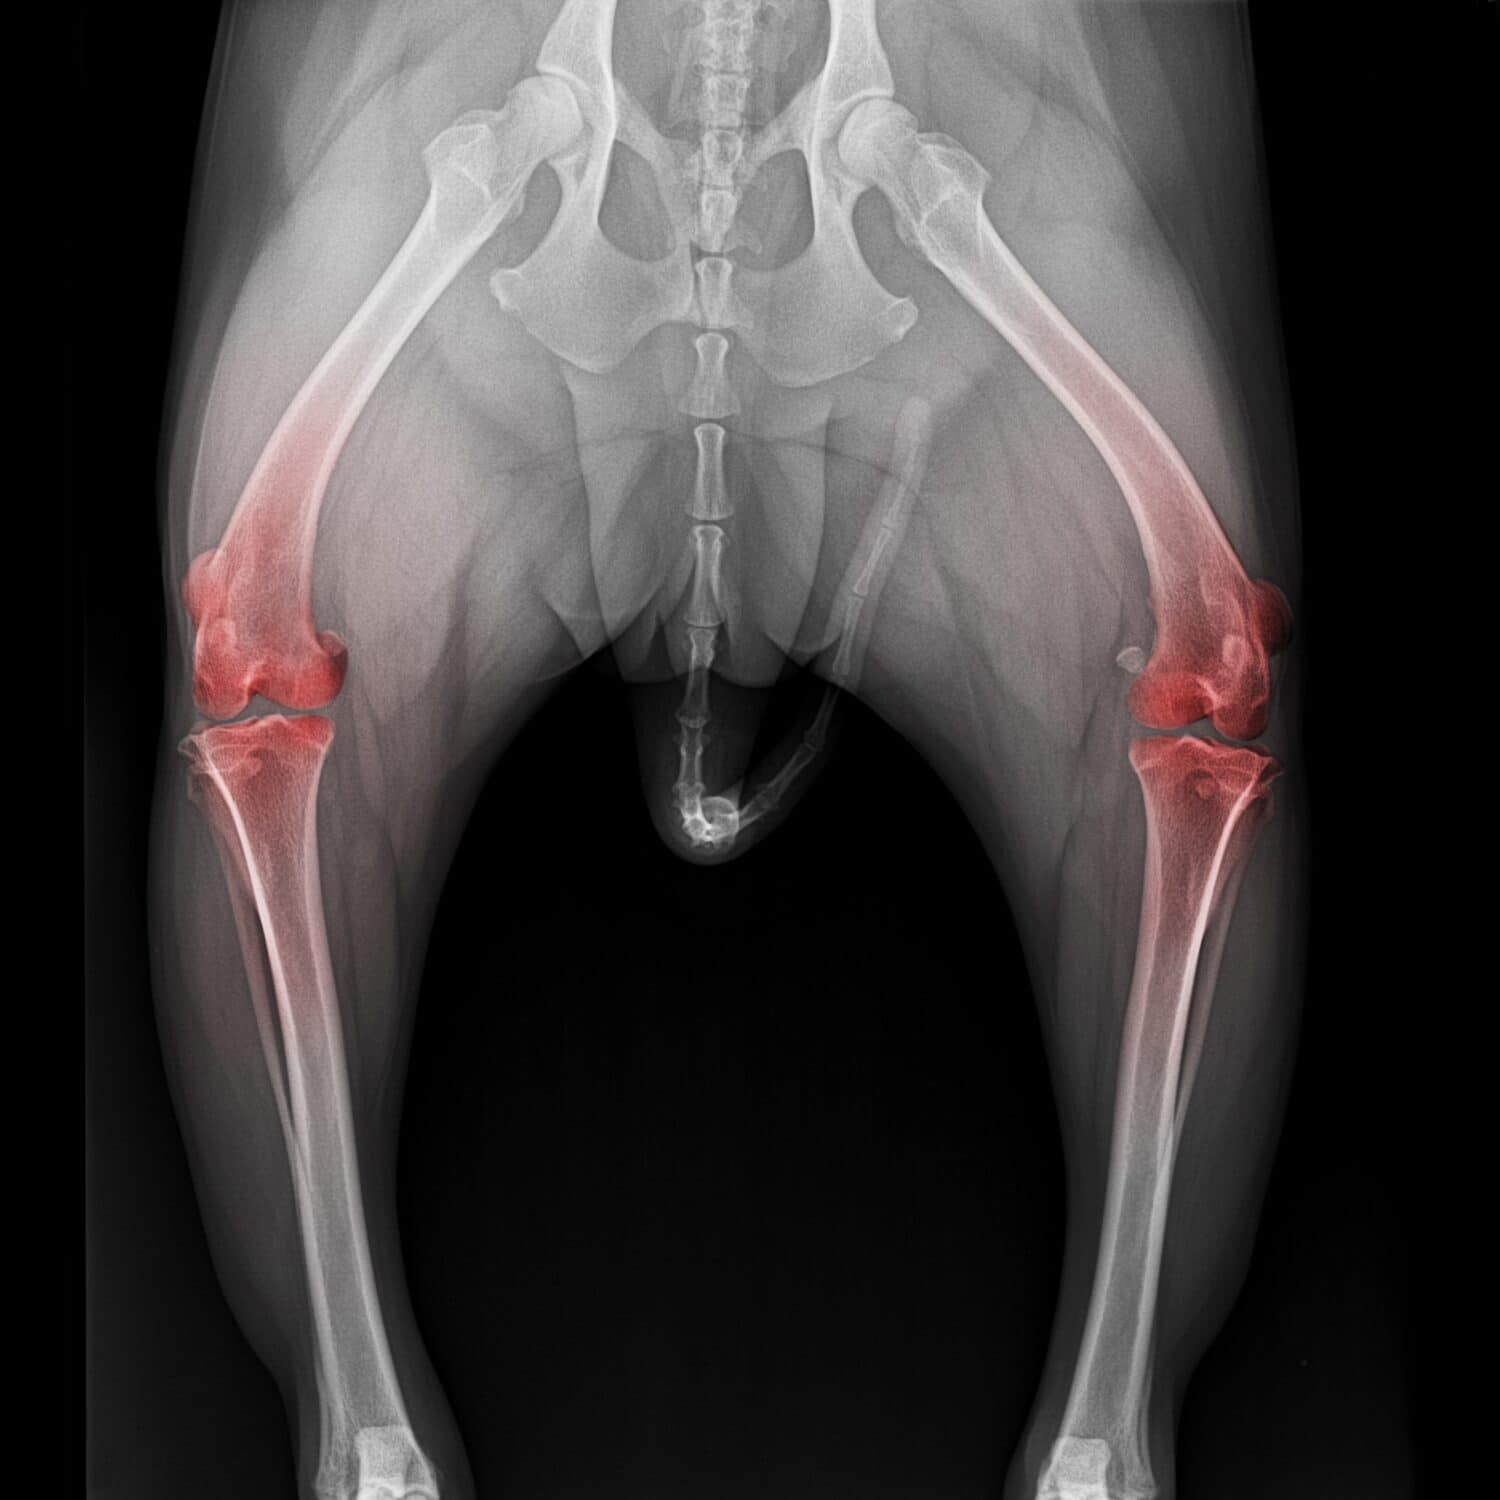 Pellicola radiografica dal bacino all'articolazione del ginocchio del cane, vista anteriore con evidenziazione rossa sull'area del dolore all'articolazione del ginocchio - medicina veterinaria e concetto di anatomia veterinaria - colore bianco e nero